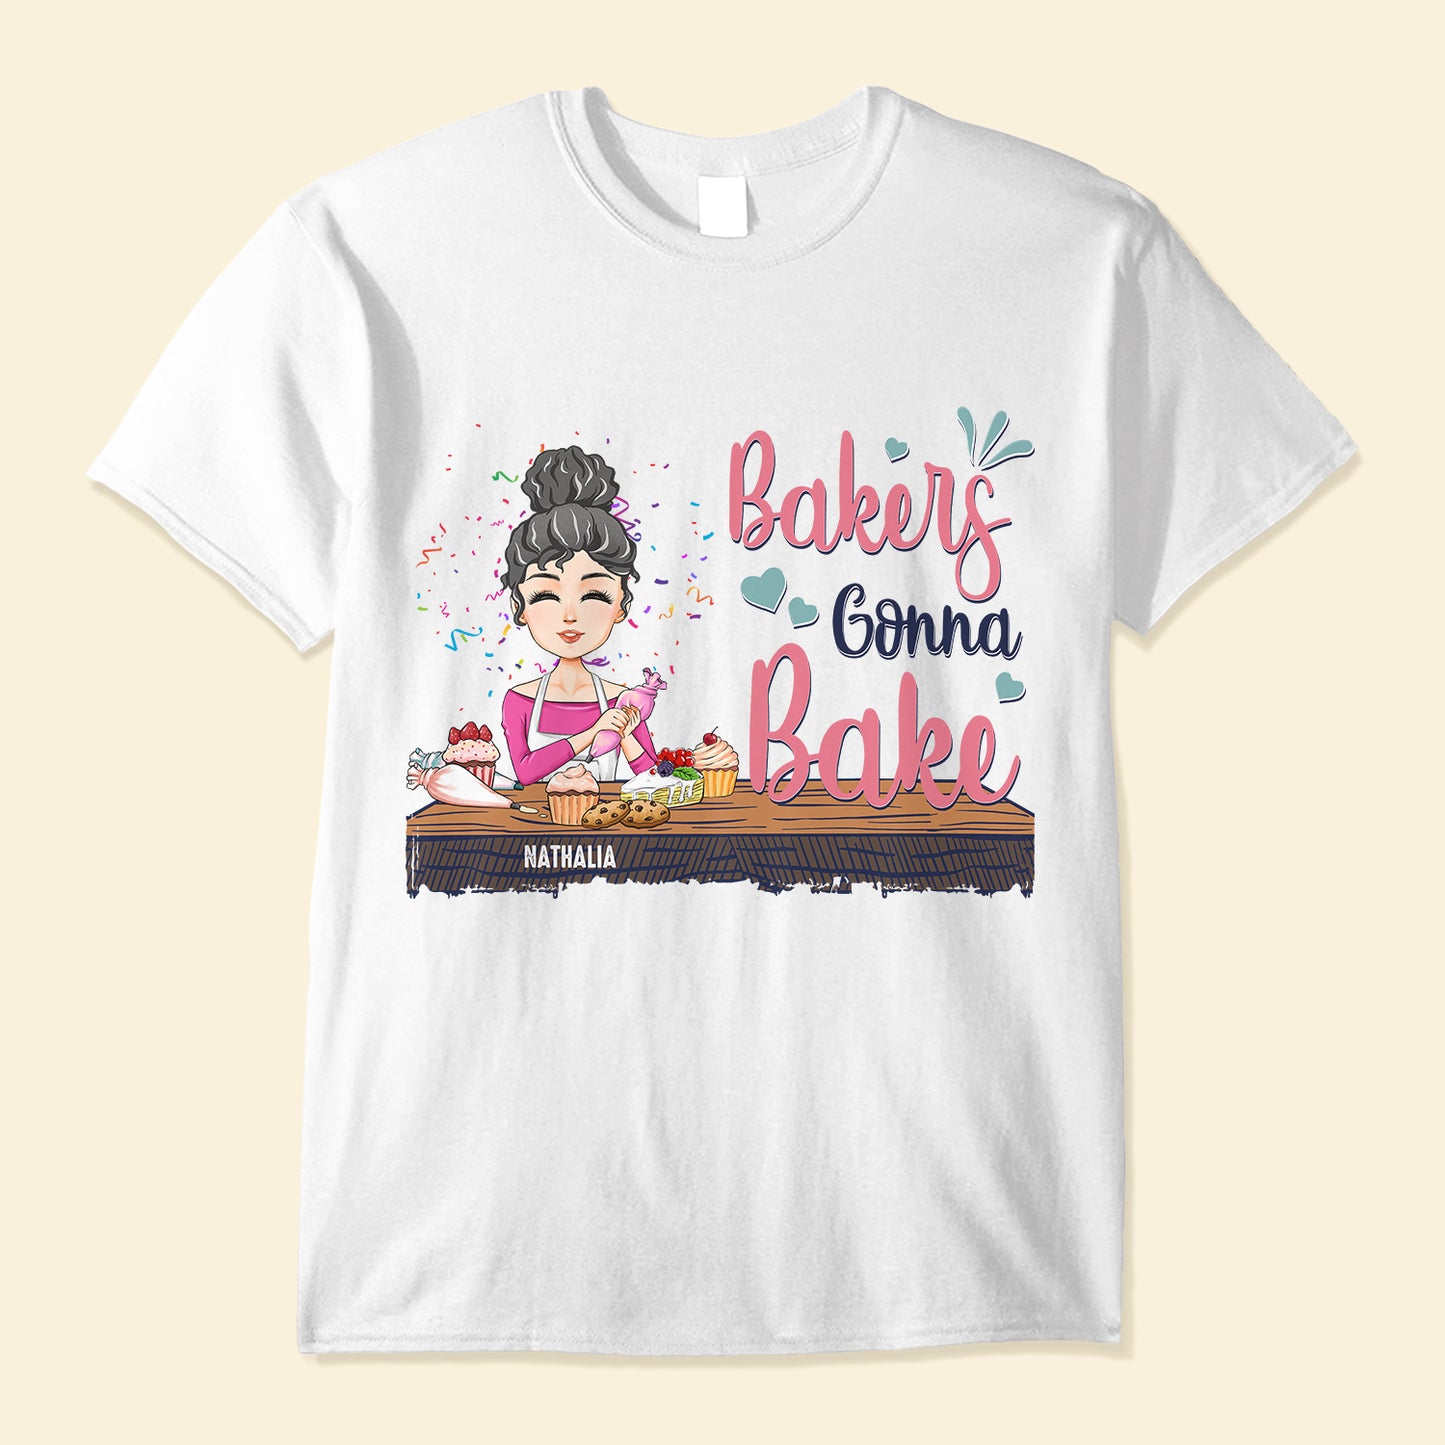 Baker Gonna Bake - Personalized Shirt - Gift For Baking Lover, Baker, Bakery